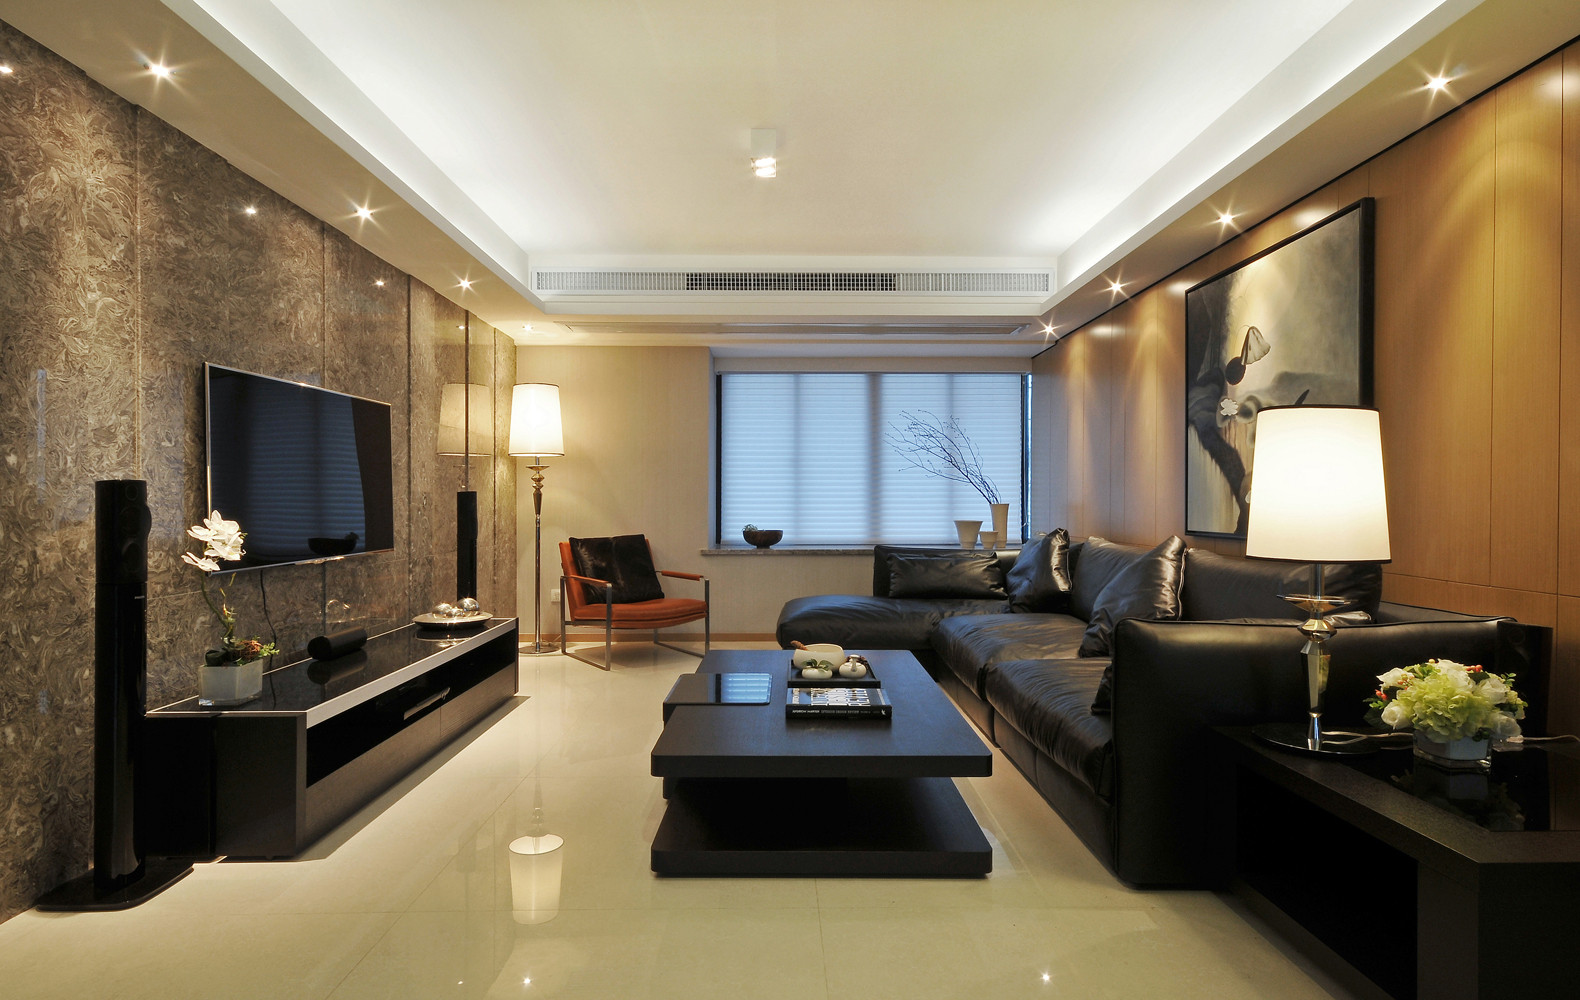 20万以上装修,110平米装修,三居室装修,客厅,现代简约风格,电视背景墙,沙发,黑白,灰色